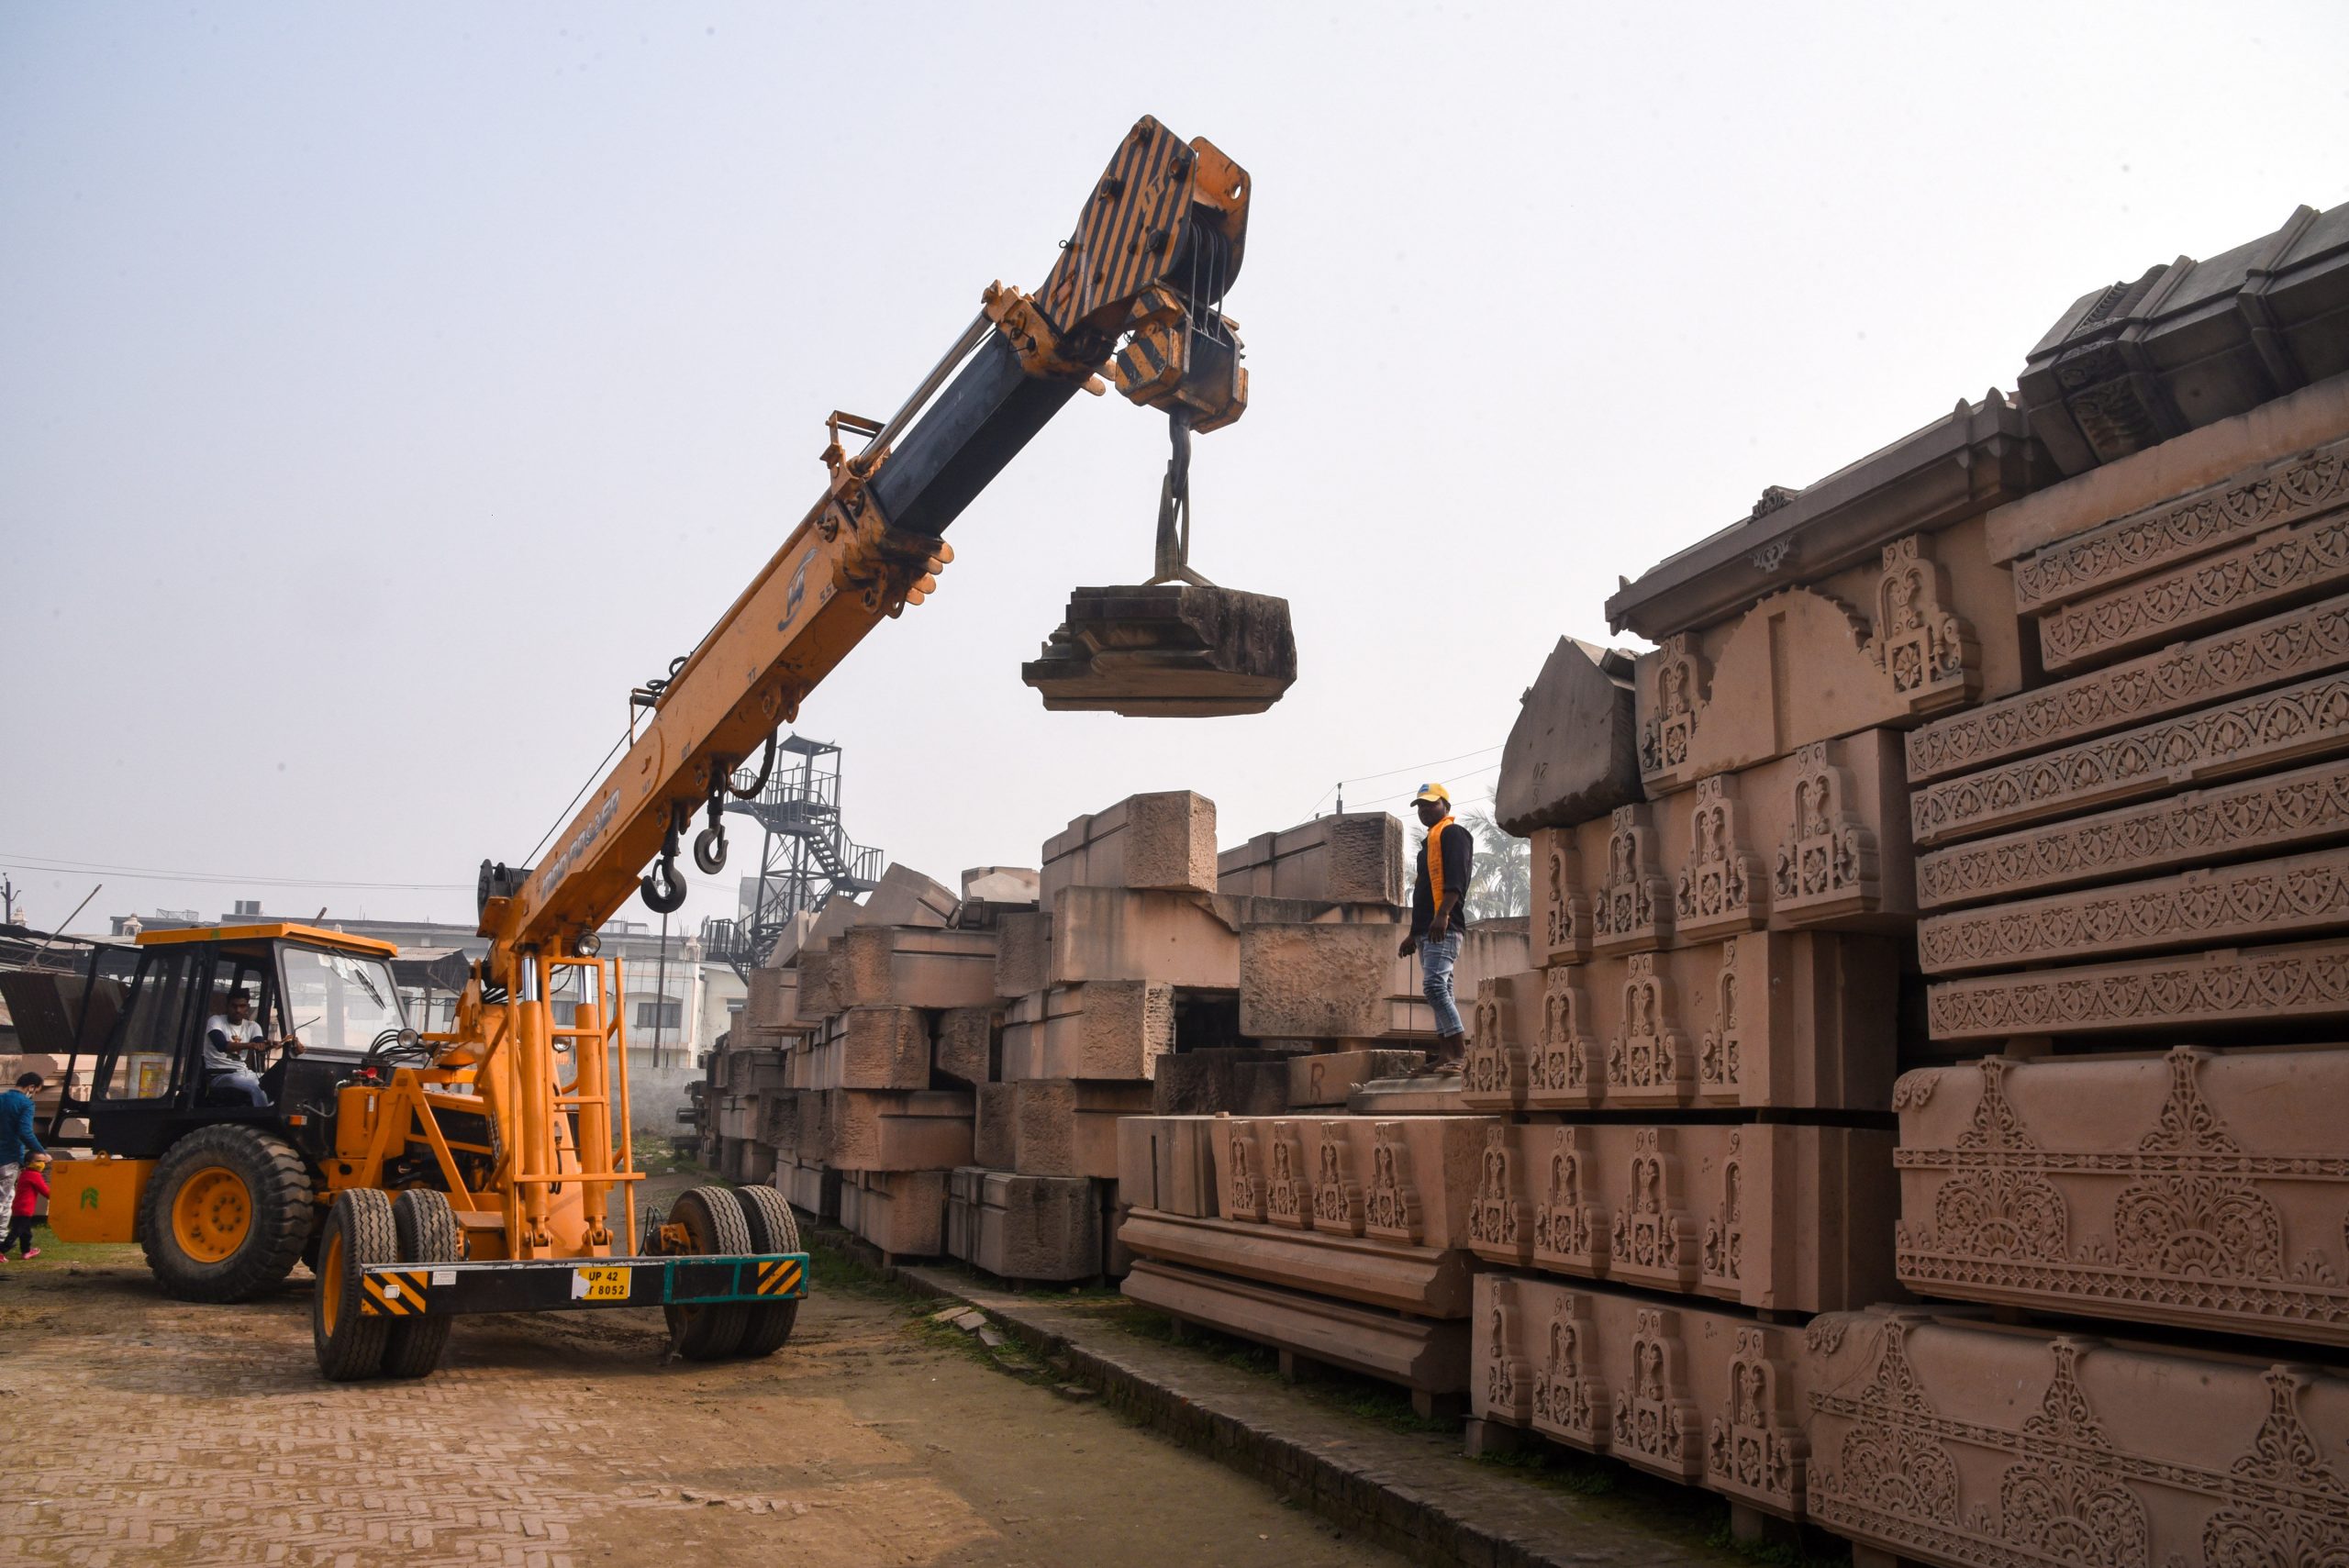 अयोध्या में राम मंदिर की नींव का काम जनवरी से शुरू होगा, बाढ़ से बचाने के लिए किया जाएगा खास इंतजाम